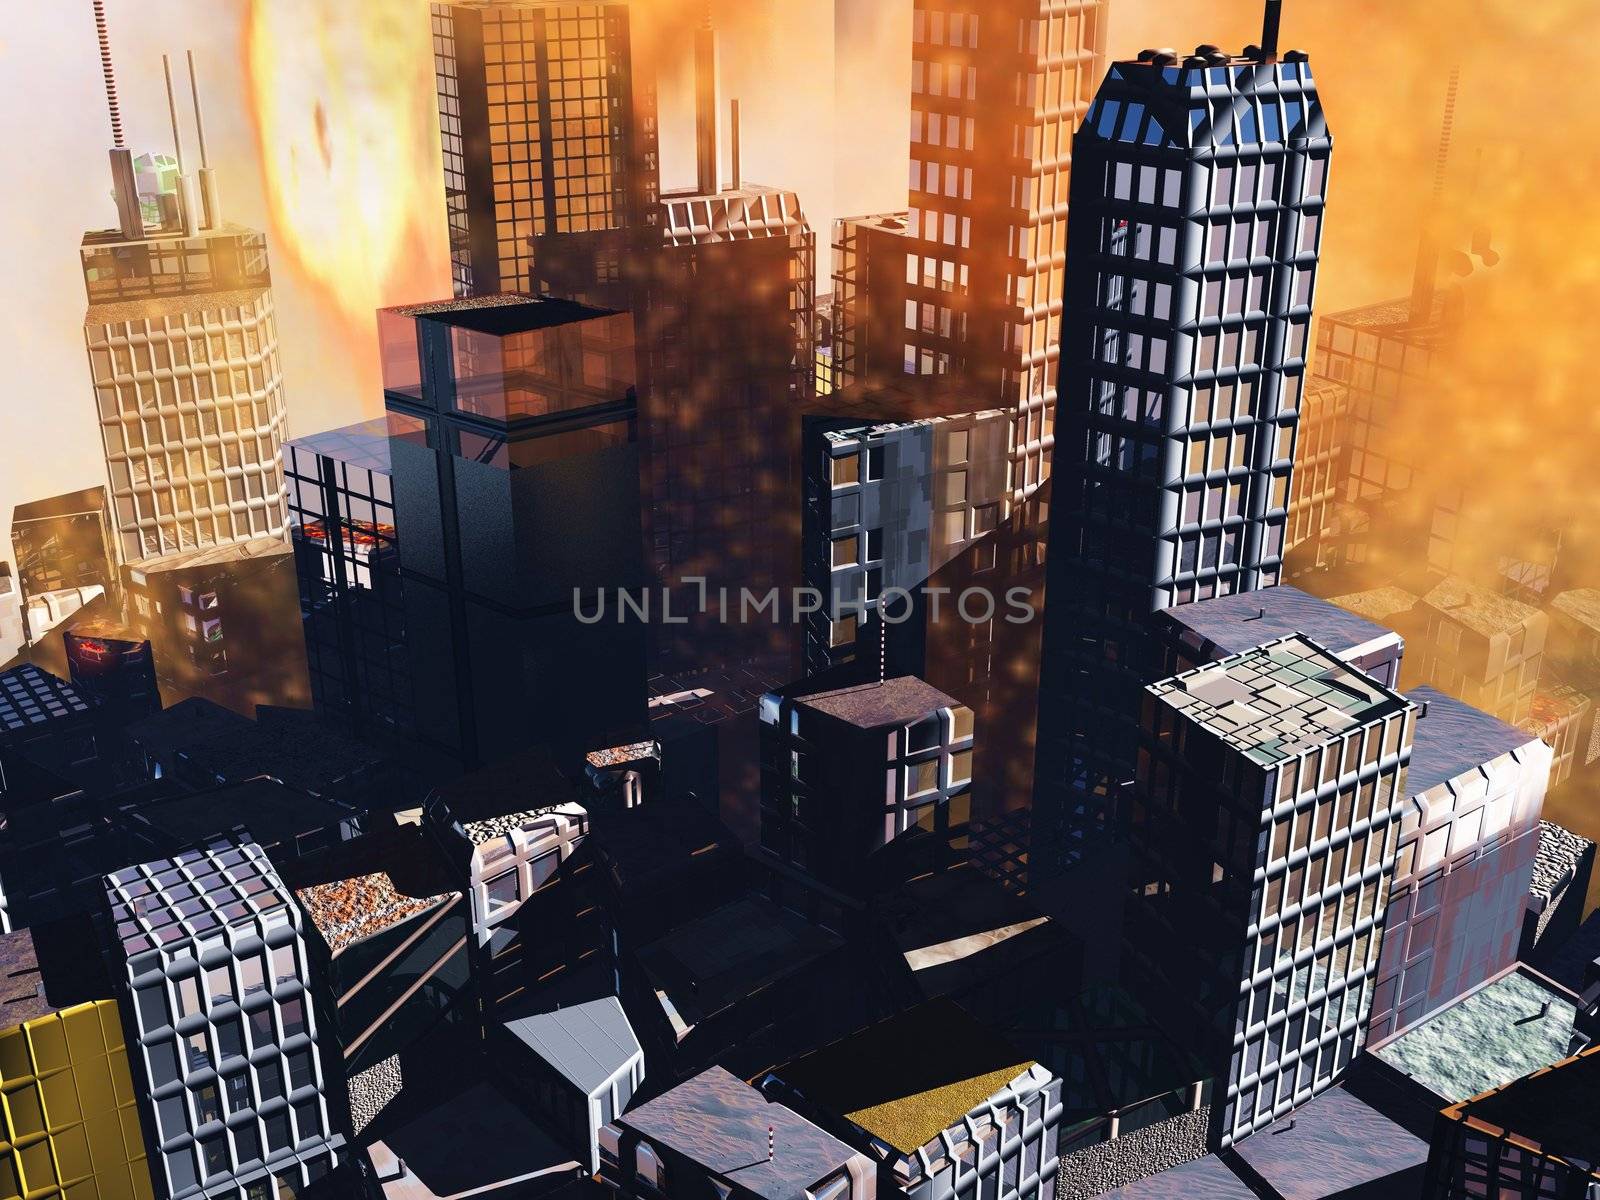 Armageddon scene in city by andromeda13